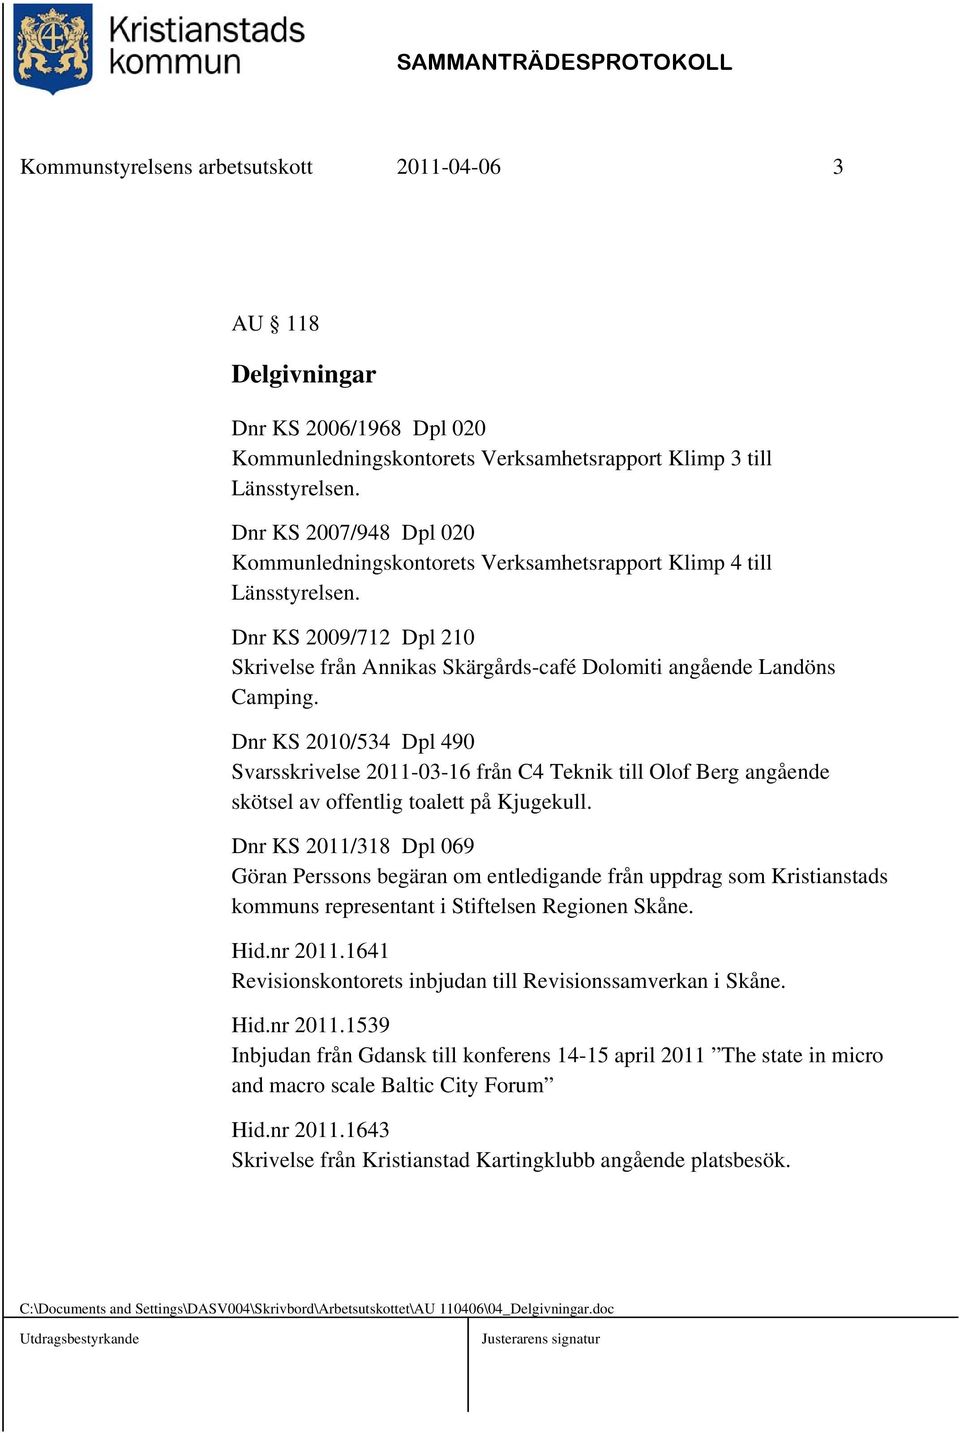 Dnr KS 2010/534 Dpl 490 Svarsskrivelse 2011-03-16 från C4 Teknik till Olof Berg angående skötsel av offentlig toalett på Kjugekull.